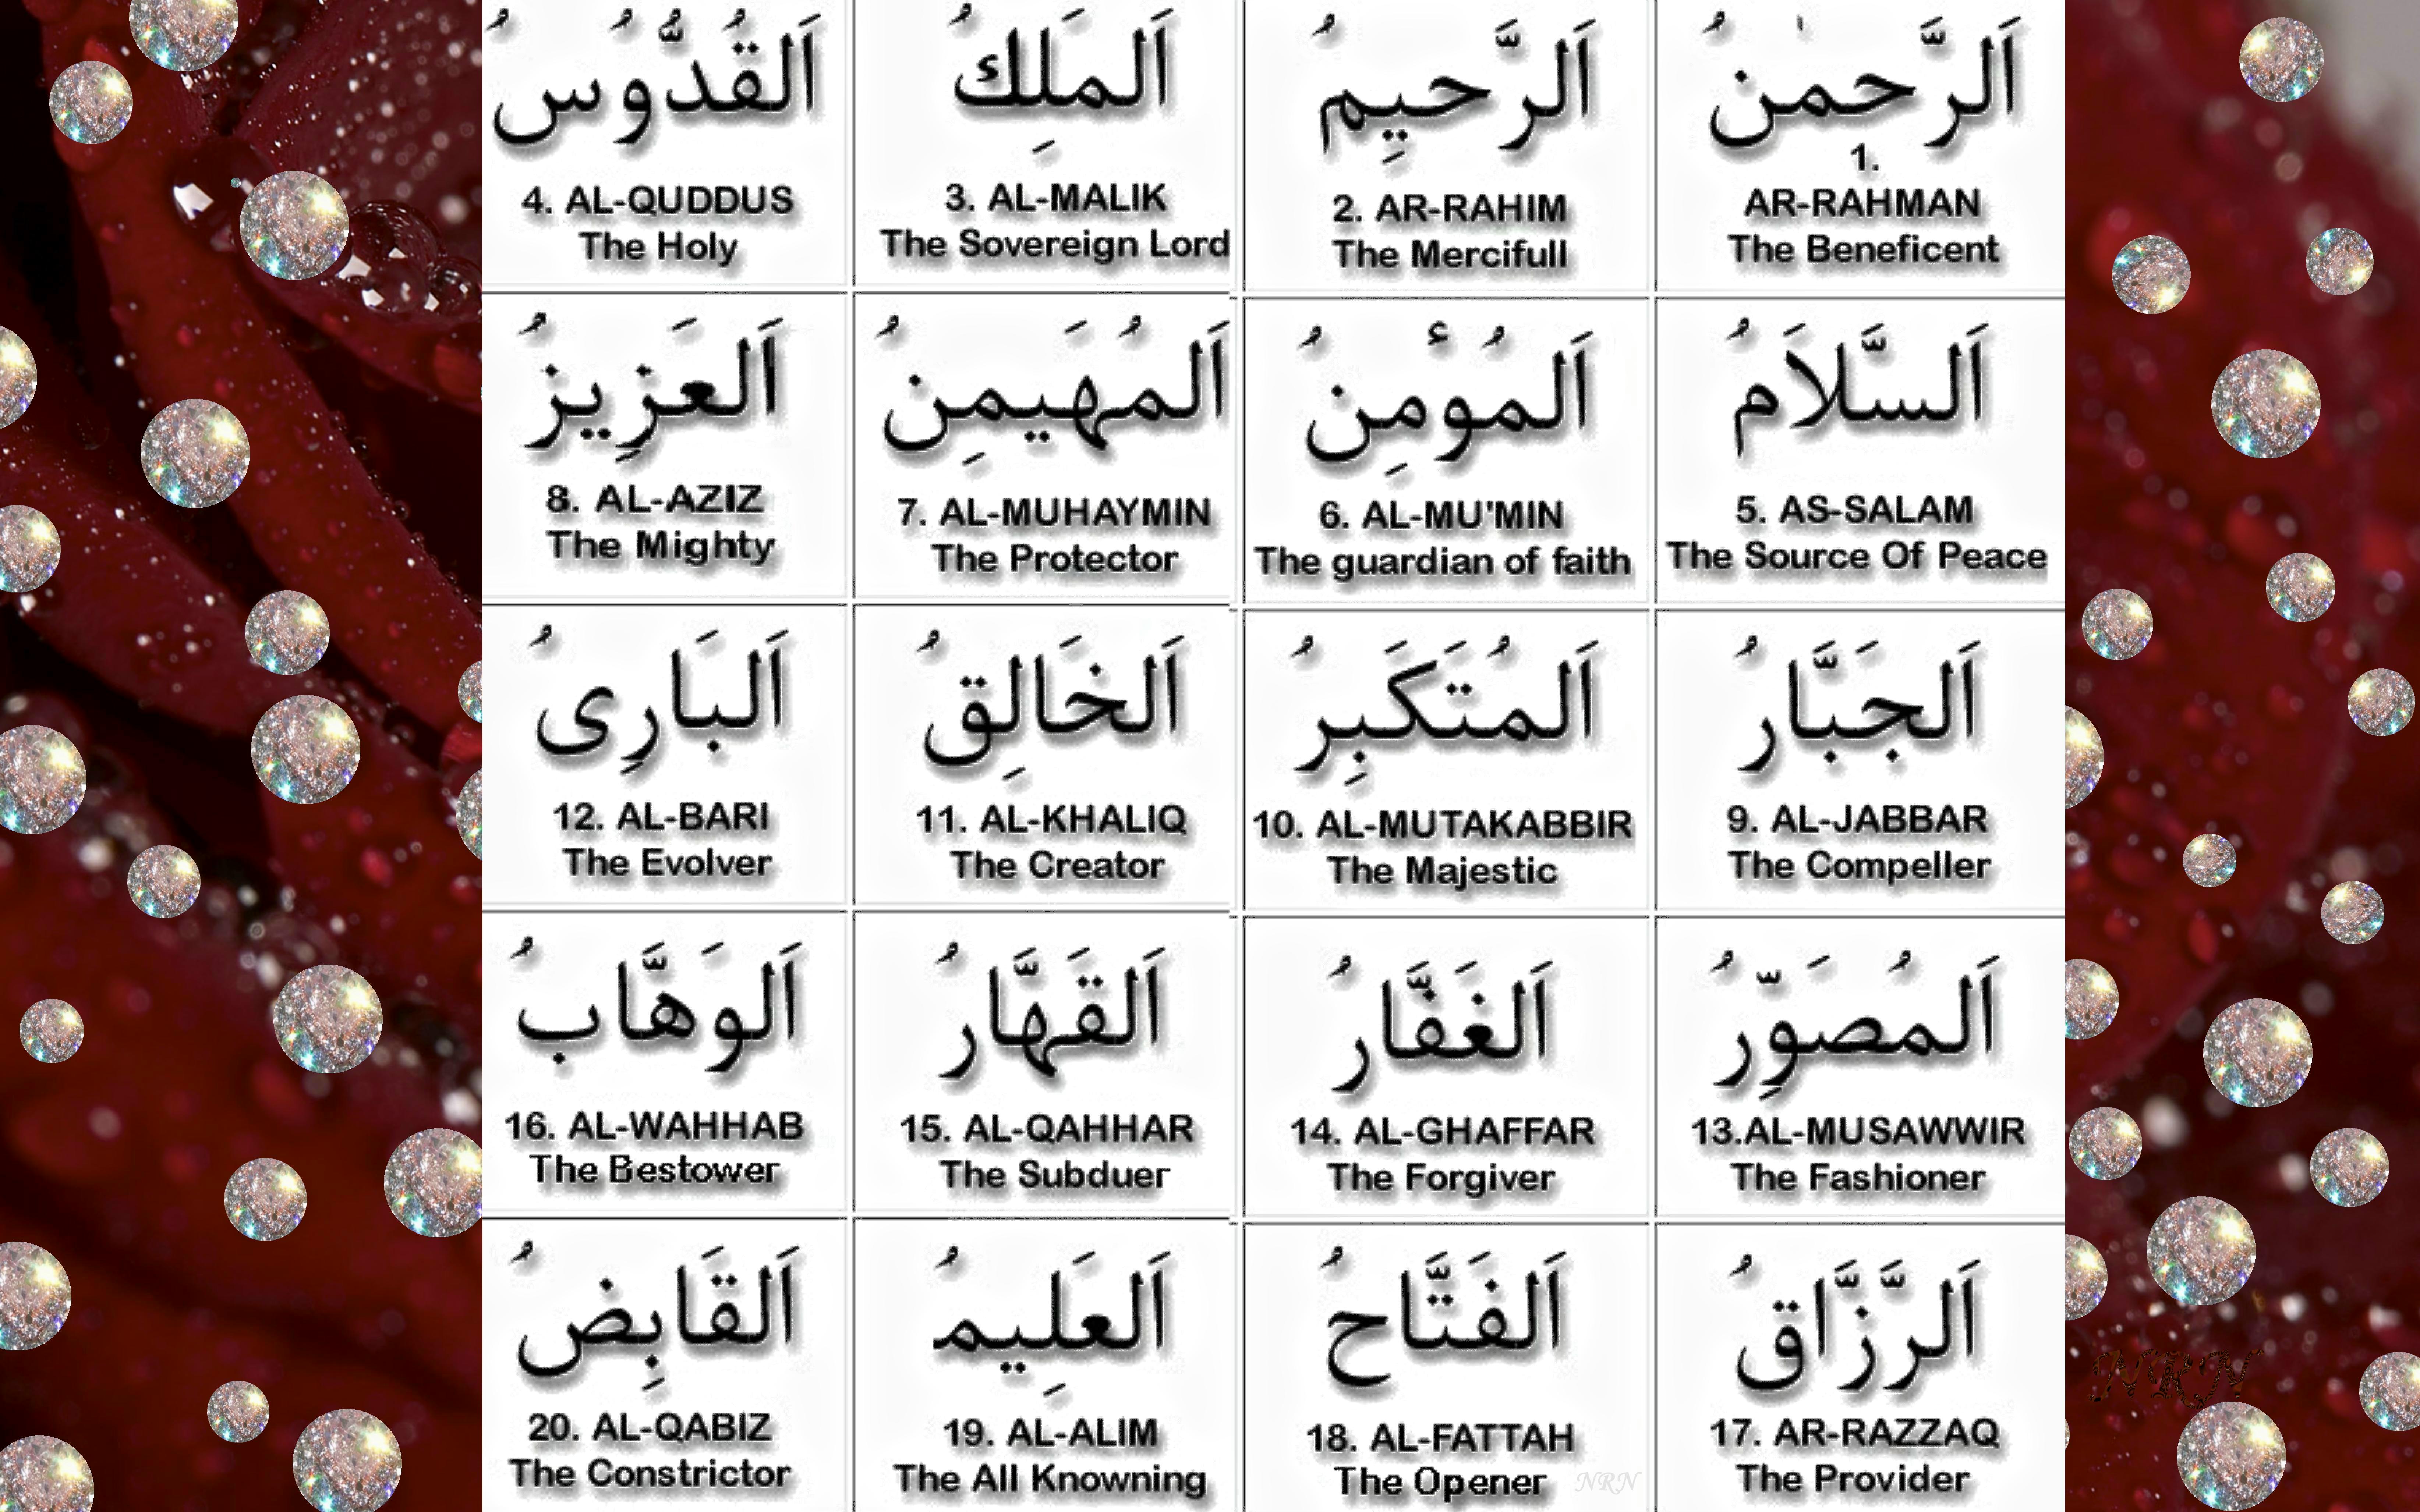 99 names of Allah - 1